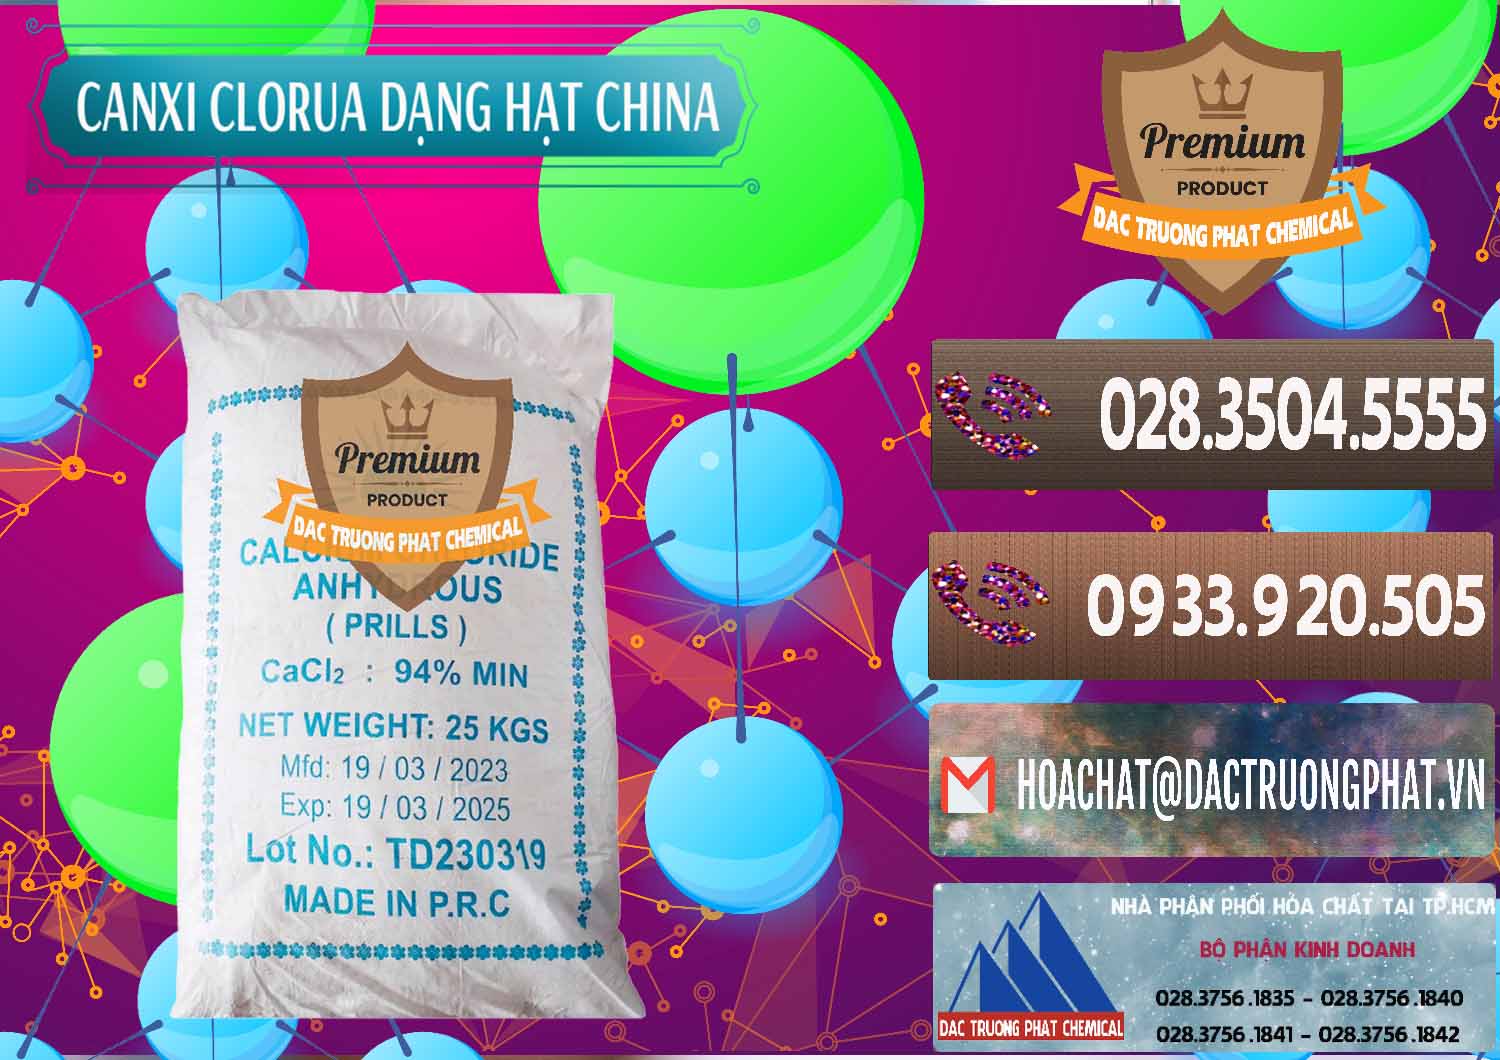 Nơi chuyên cung cấp - bán CaCl2 – Canxi Clorua 94% Dạng Hạt Trung Quốc China - 0373 - Nhà cung cấp - bán hóa chất tại TP.HCM - hoachatviet.net